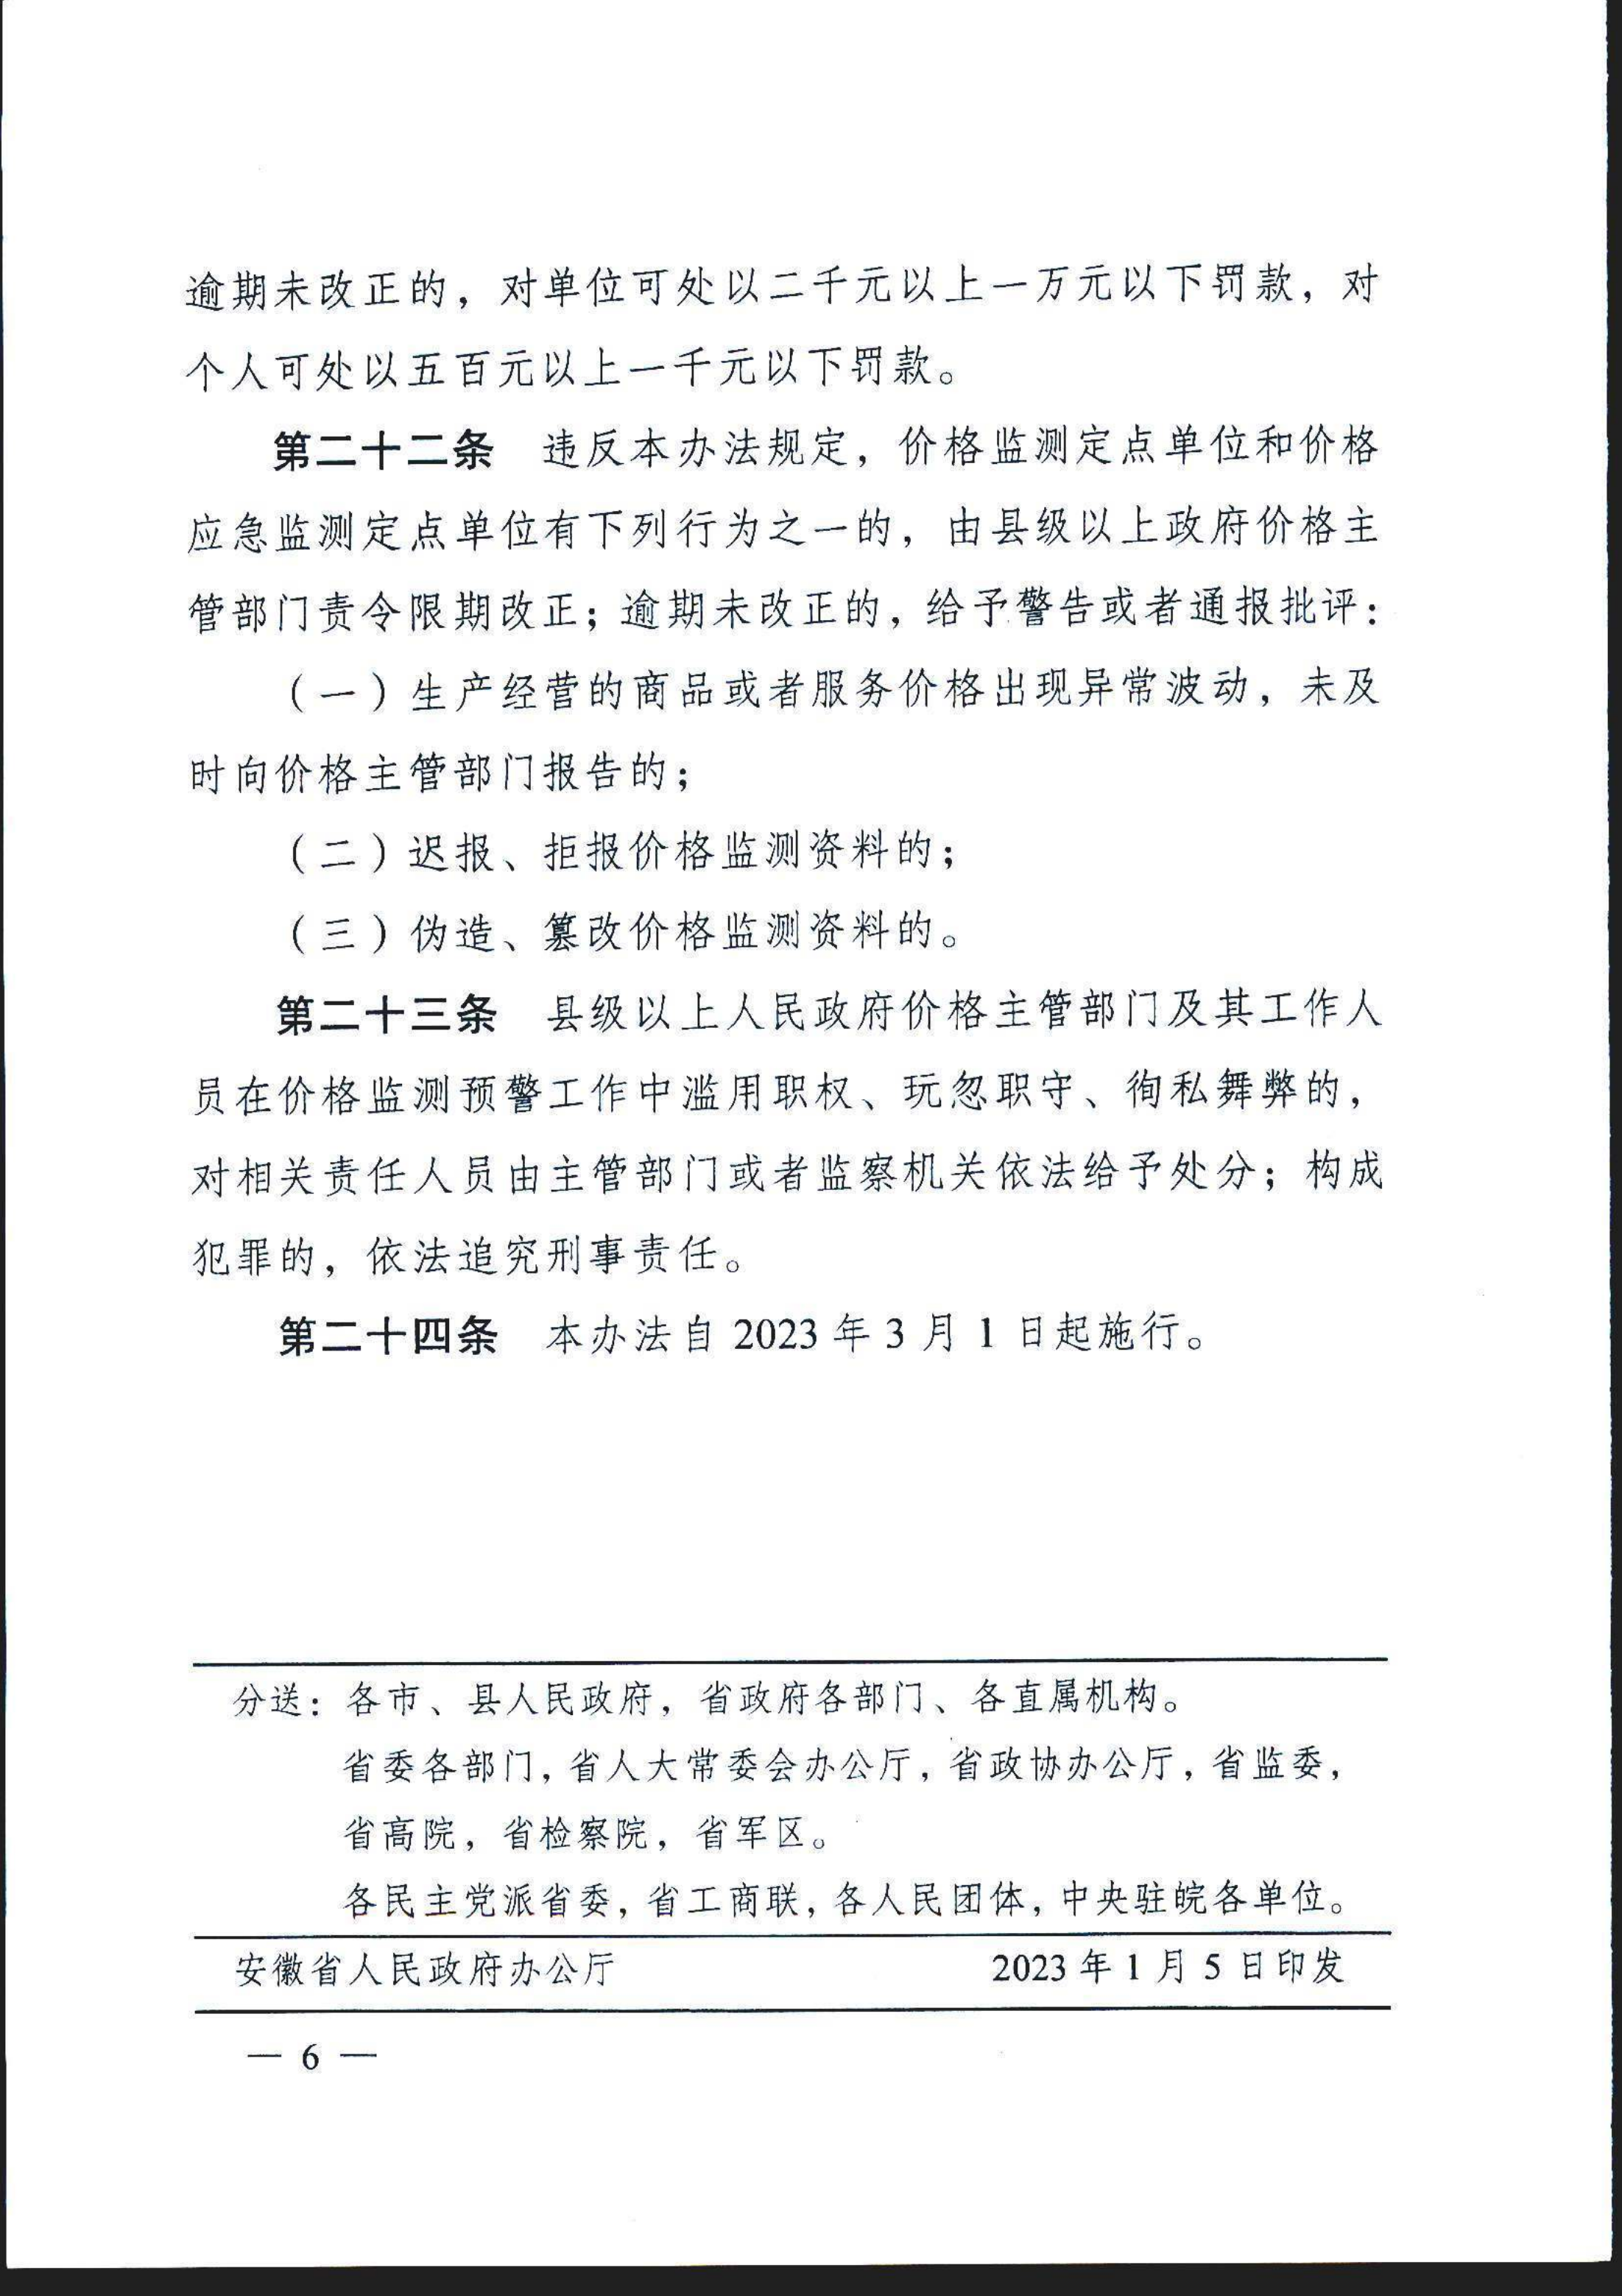 安徽省价格监测预警管理办法(1)(1)_7.png